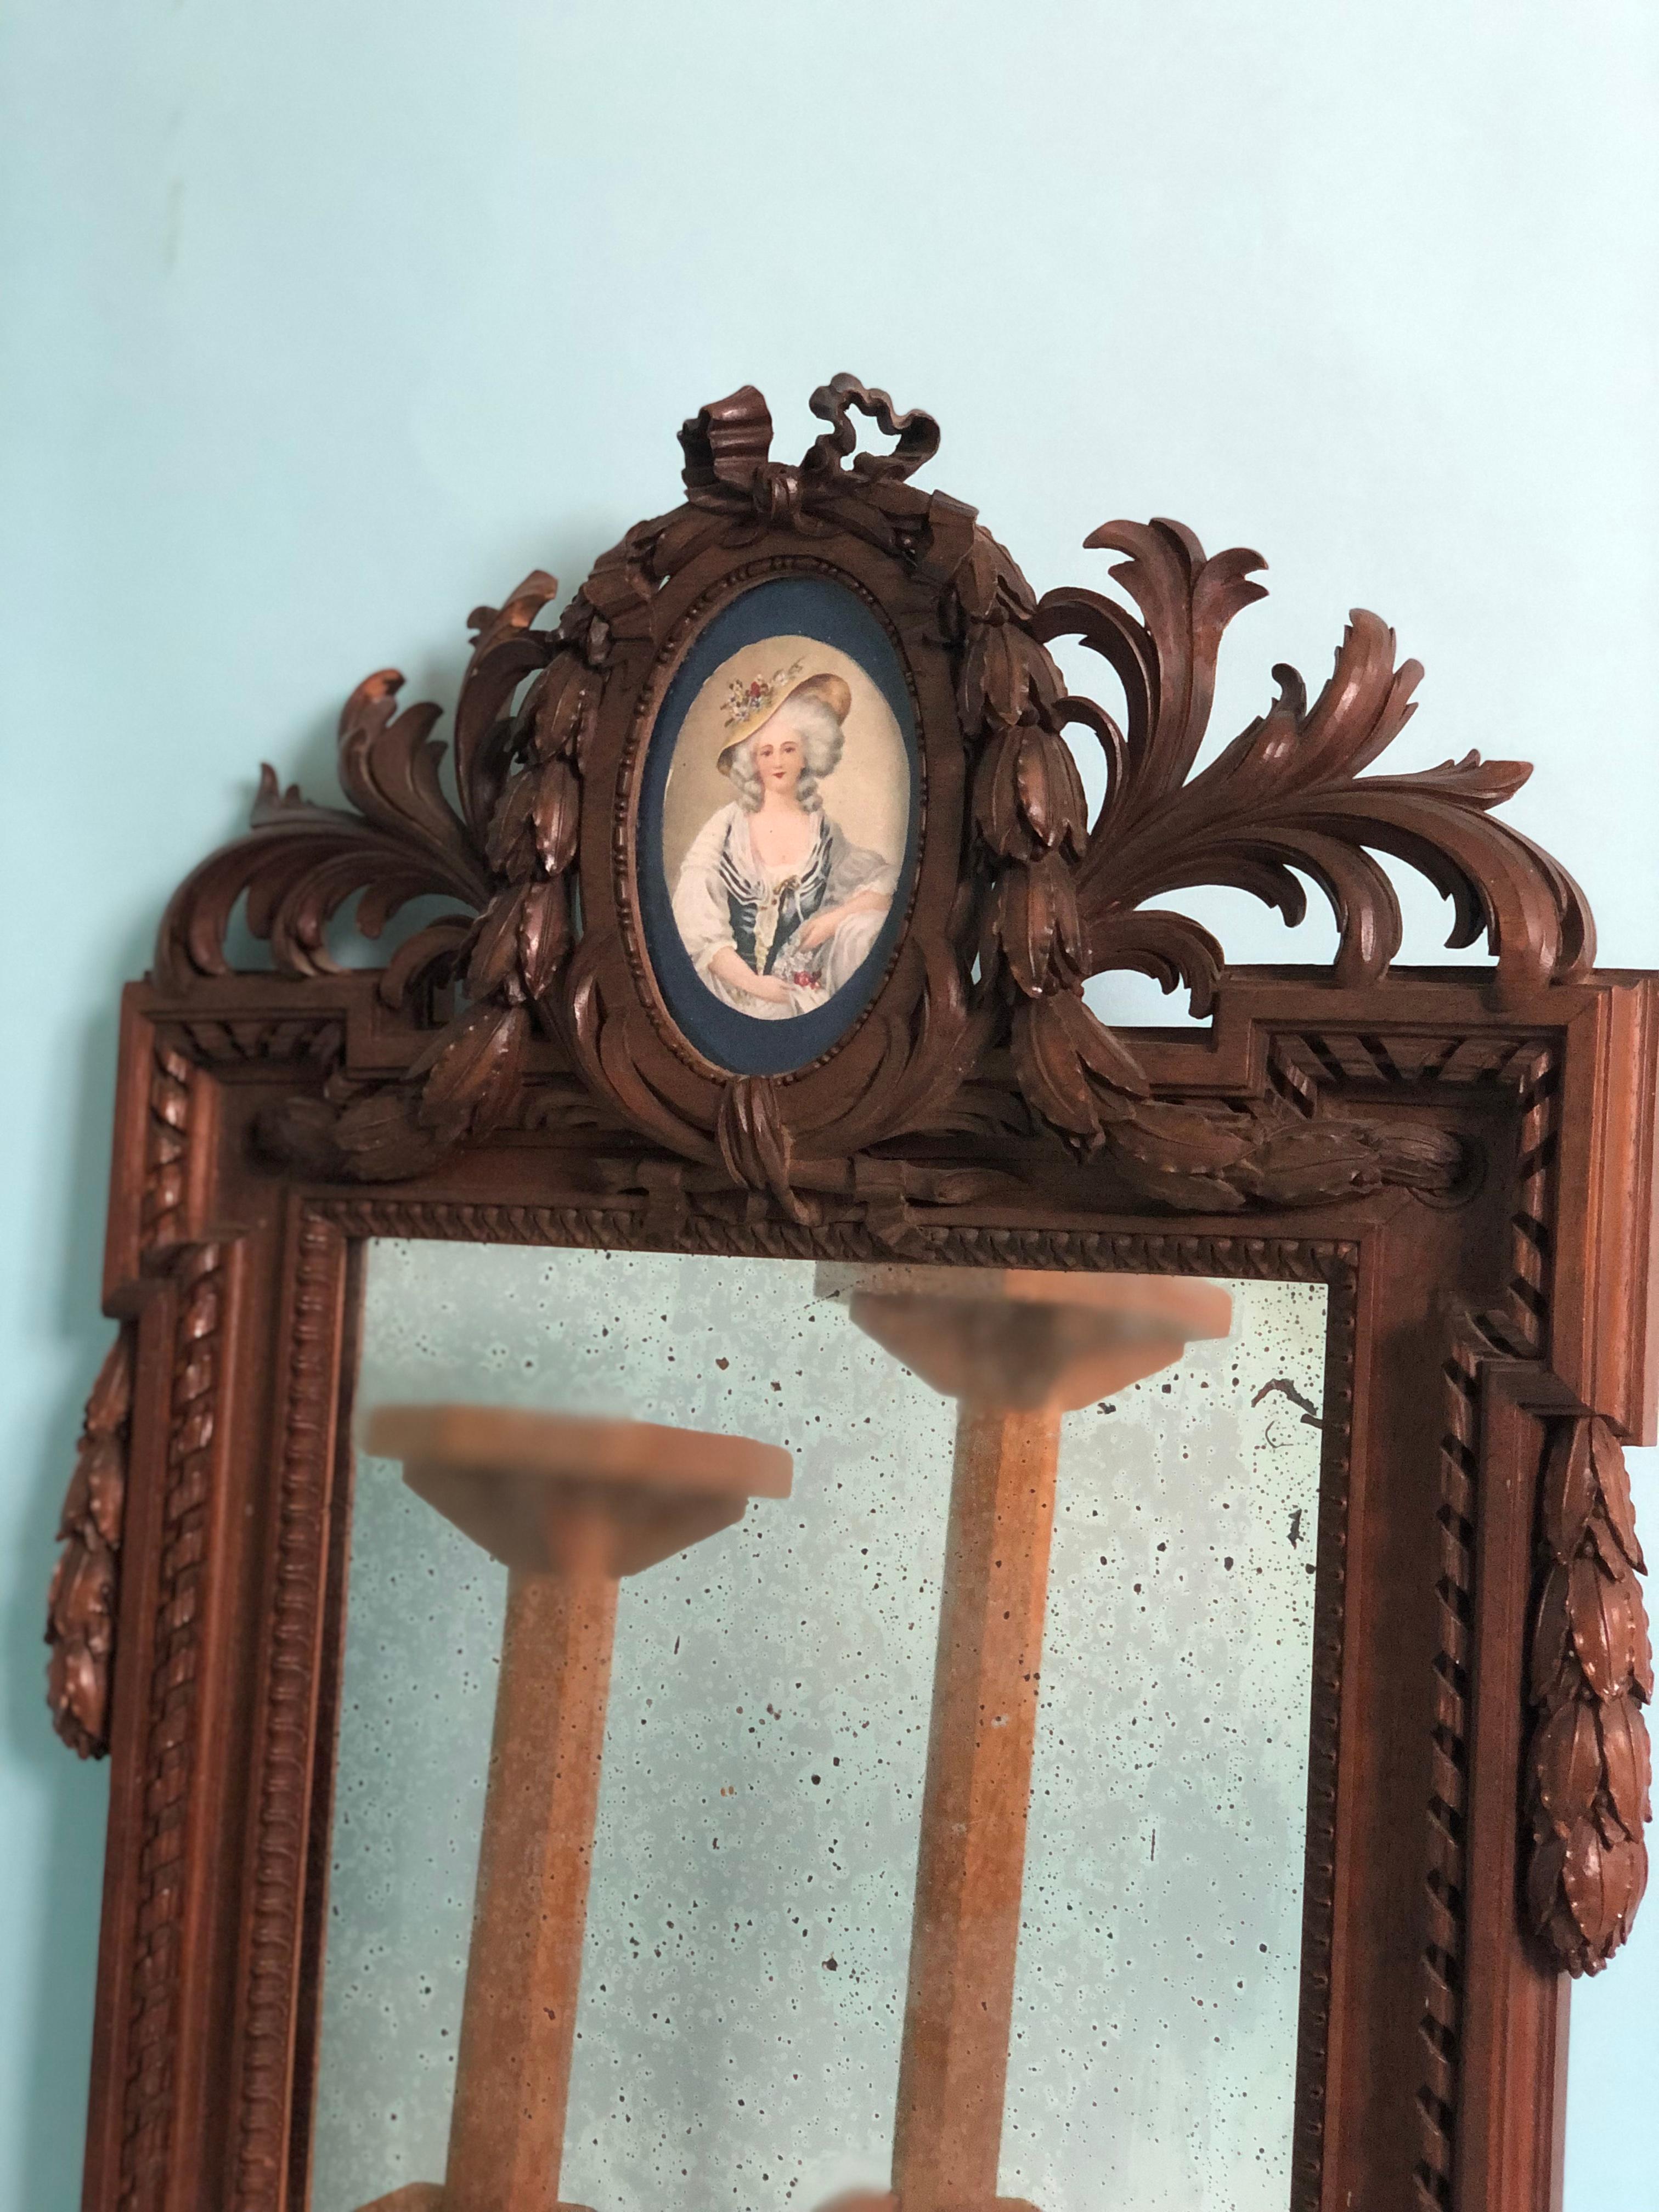 Sehr reich geschnitzter Mahagoni-Spiegel mit kleinem Porträt im oberen Bereich, Napoleon III.  Frankreich. Das Spiegelglas ist schön verwittert. Das Porträt stammt aus einer späteren Zeit.

In gutem Zustand, Frankreich, Ende 19. Jahrhundert

Objekt: